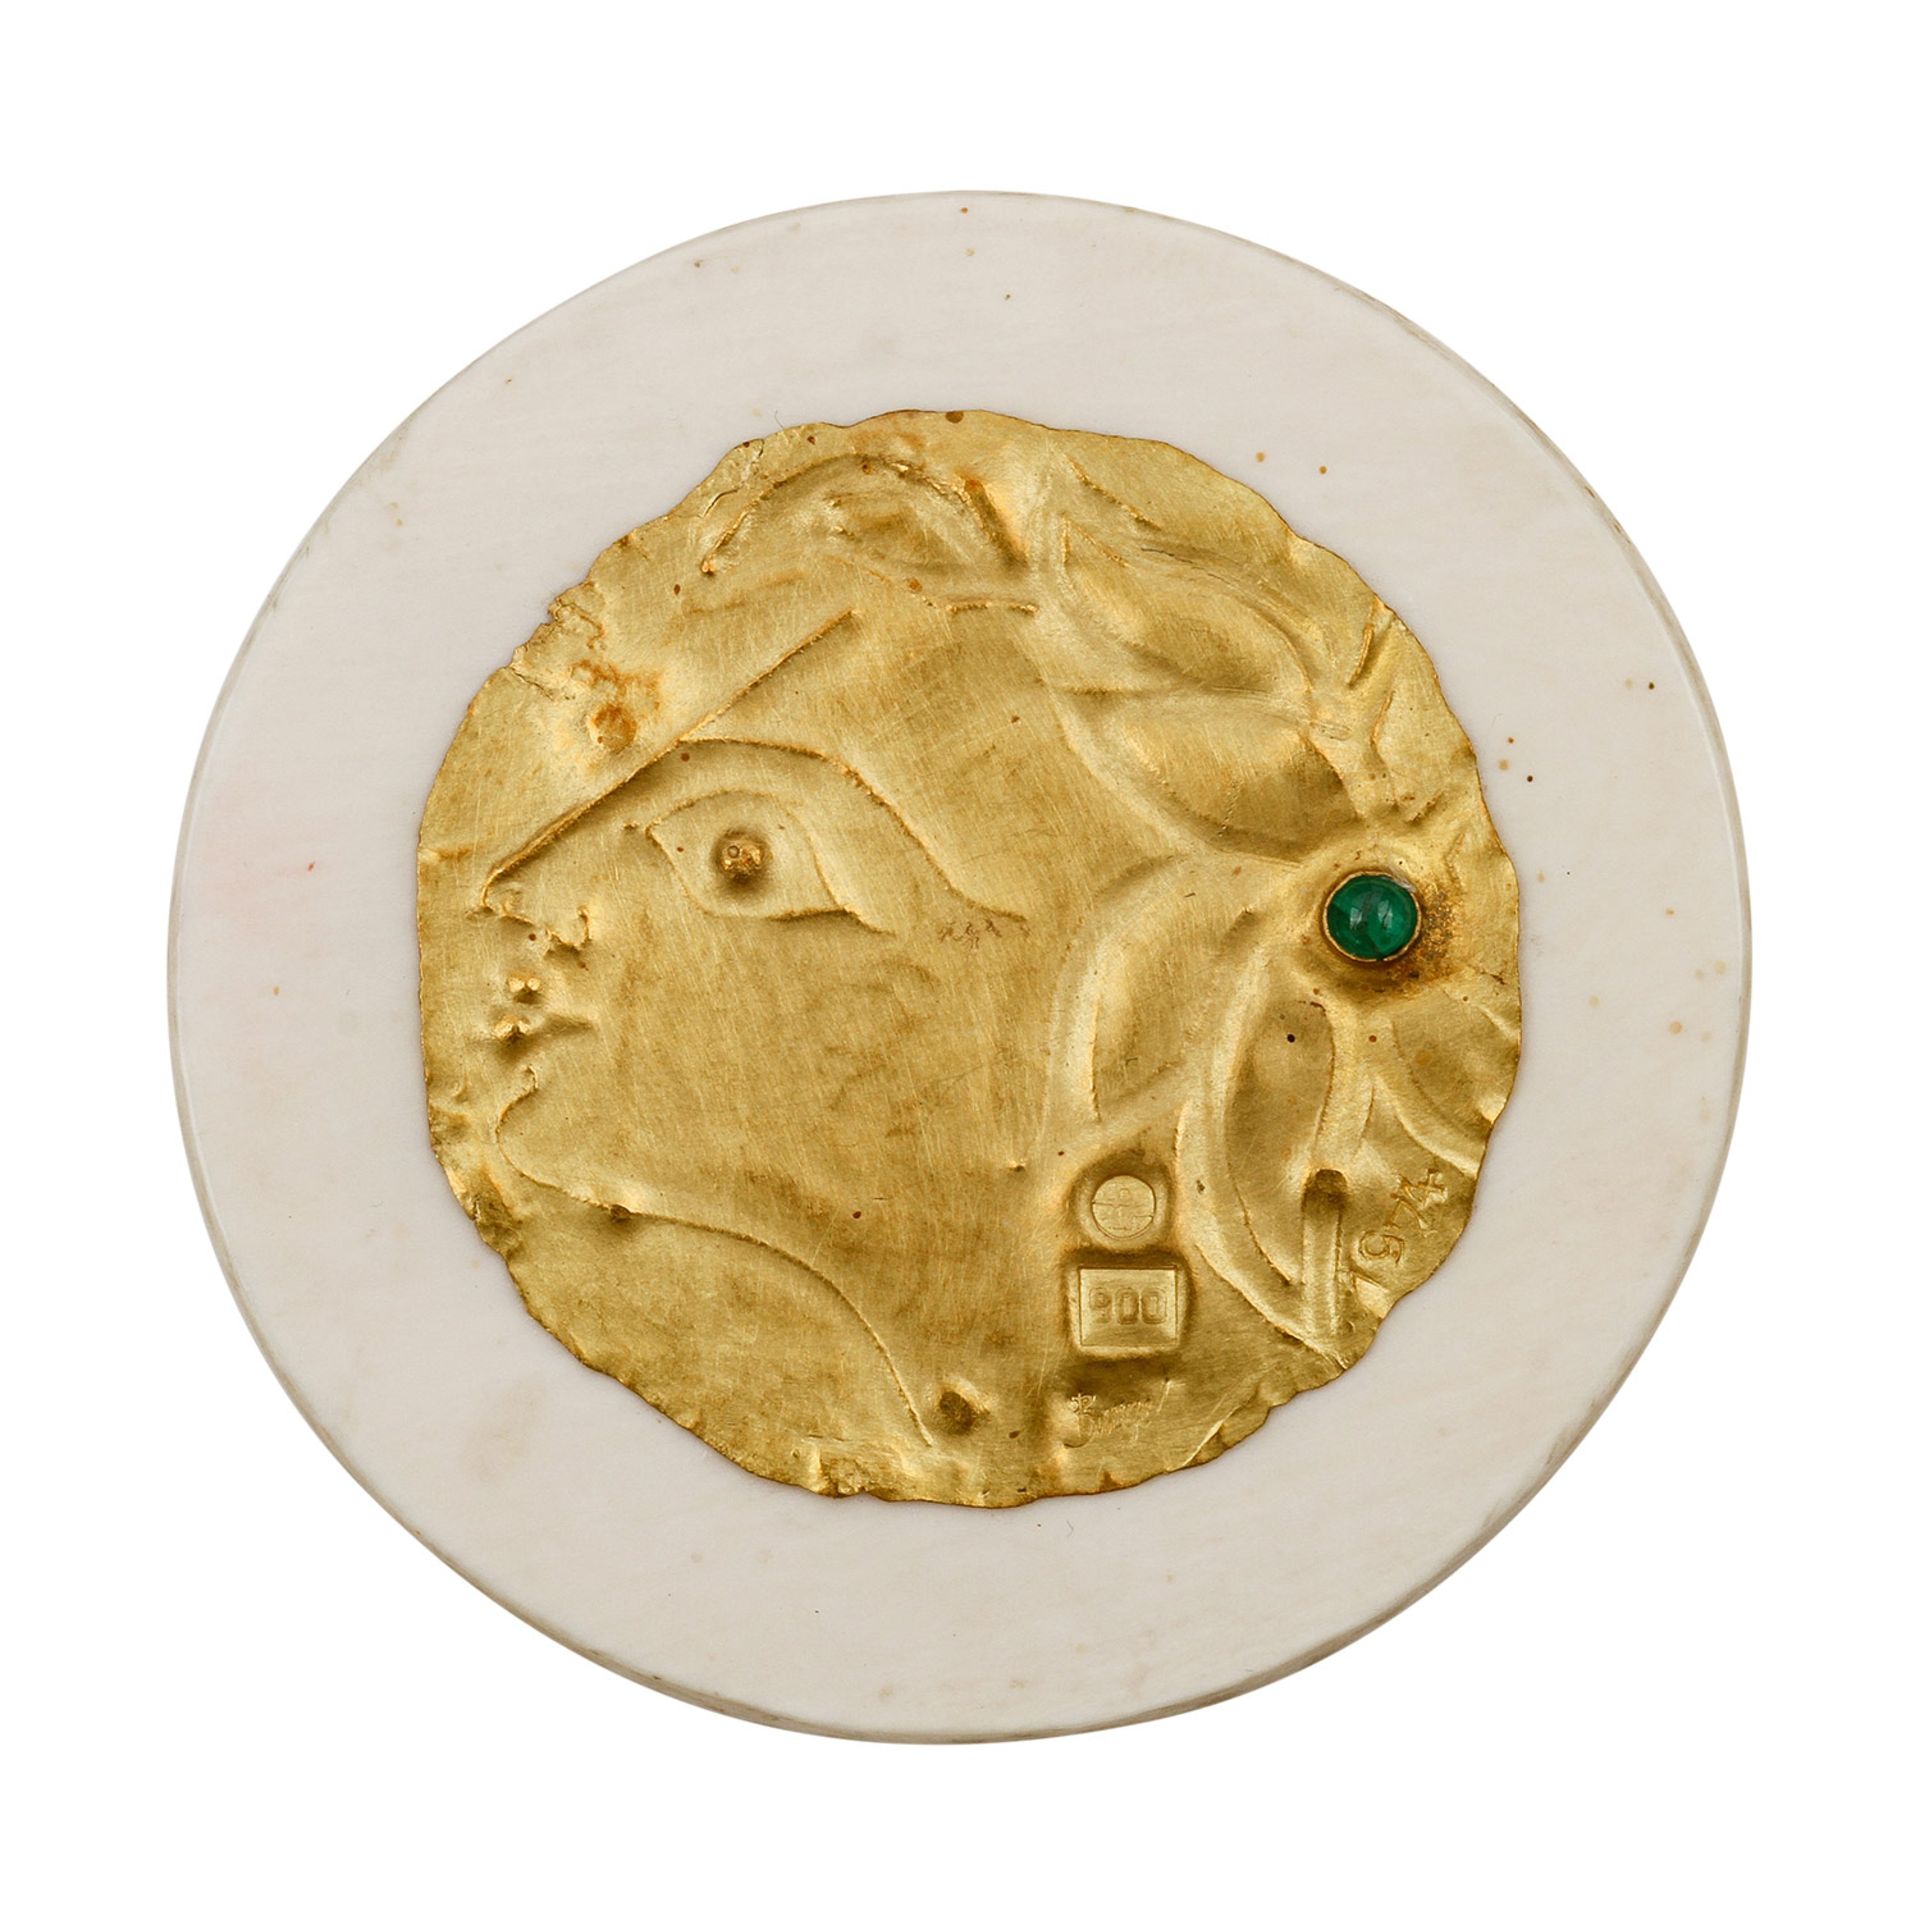 Goldminiatur "Kopf" (1974) von E. BURGEL,Gold 900, 1 Smaragd, getrieben + montiert, auf Acryl, in - Bild 2 aus 4